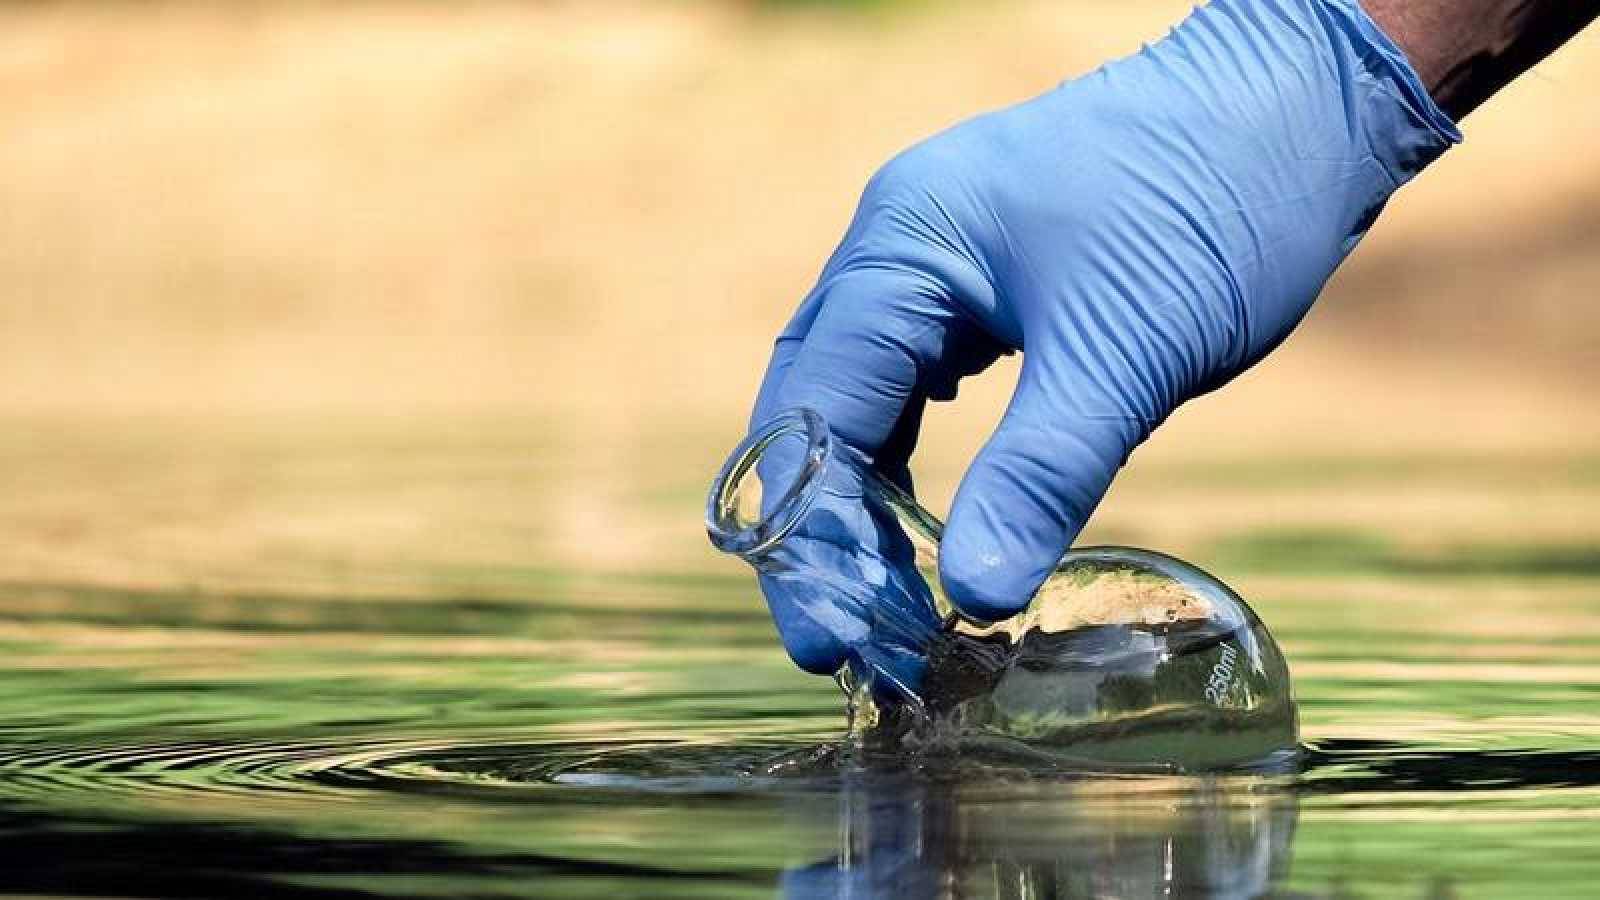 Экологическое качество воды